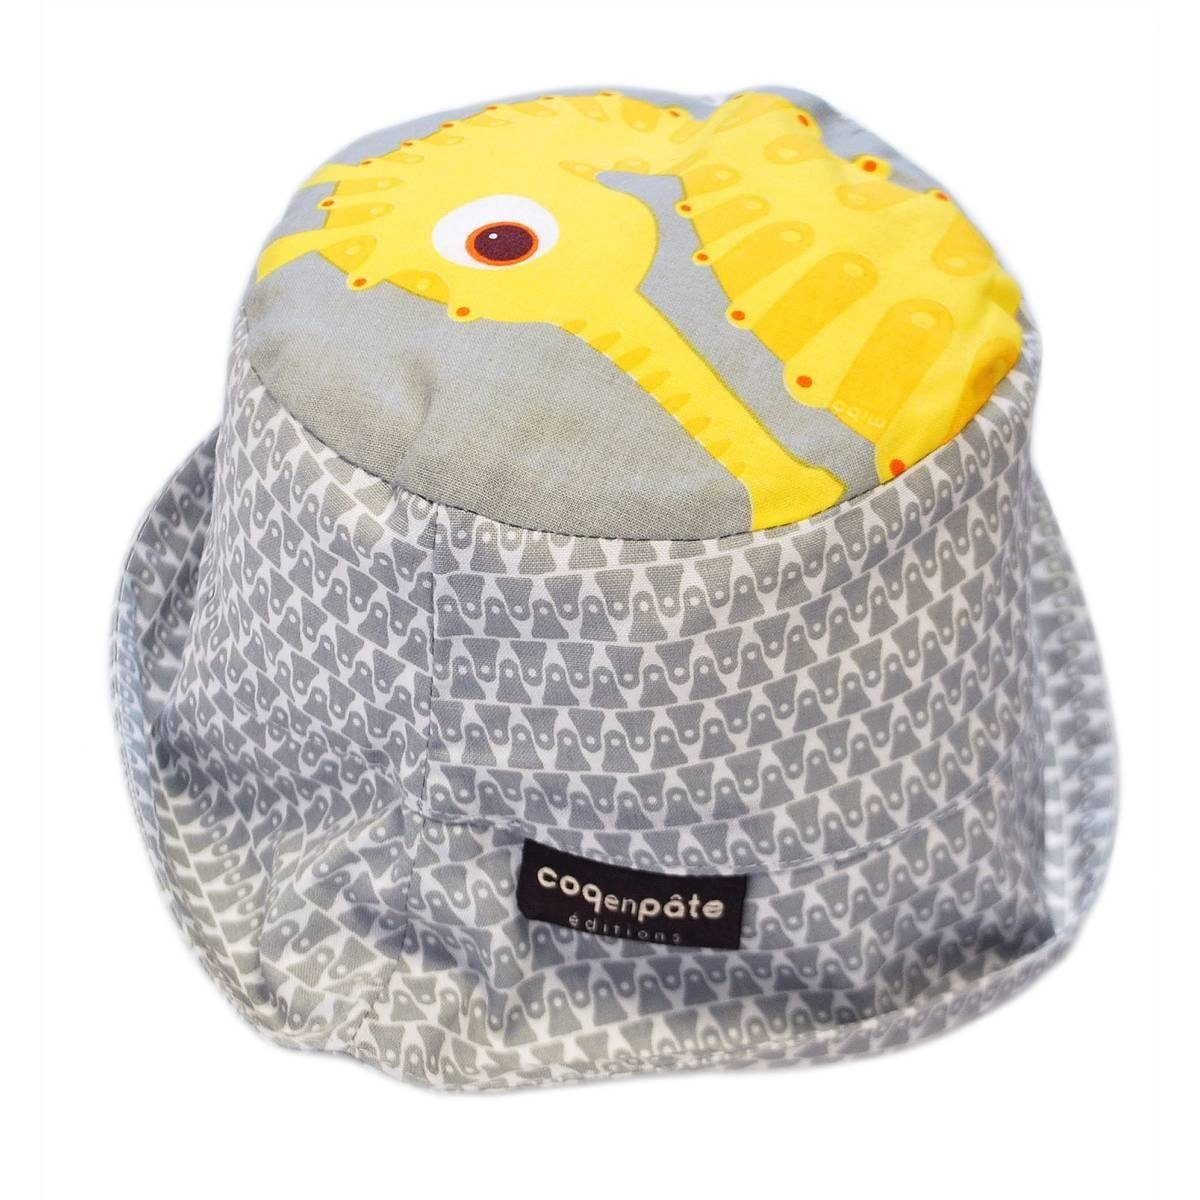 COQ EN PATE Sonnenhut Farbenfroher Kinder-Hut mit Tiermotiven und Mustern Sonnenschutz Seepferdchen - Größe: L